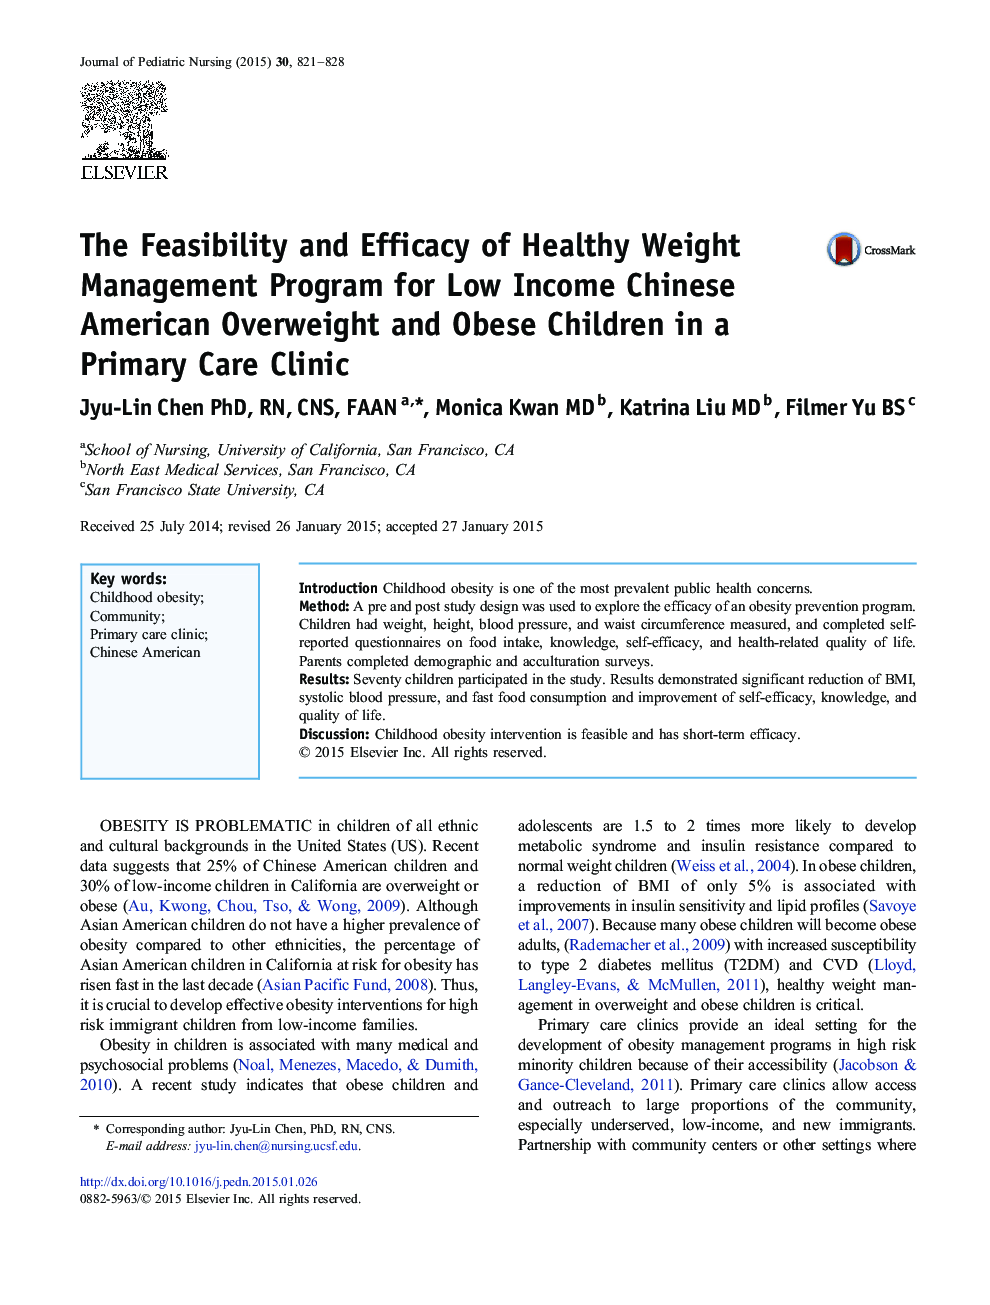 امکان سنجی و اثربخشی برنامه مدیریت وزن سالم برای کودکان دارای چاقی و اضافه وزنی کم درآمد در یک مرکز مراقبت های اولیه